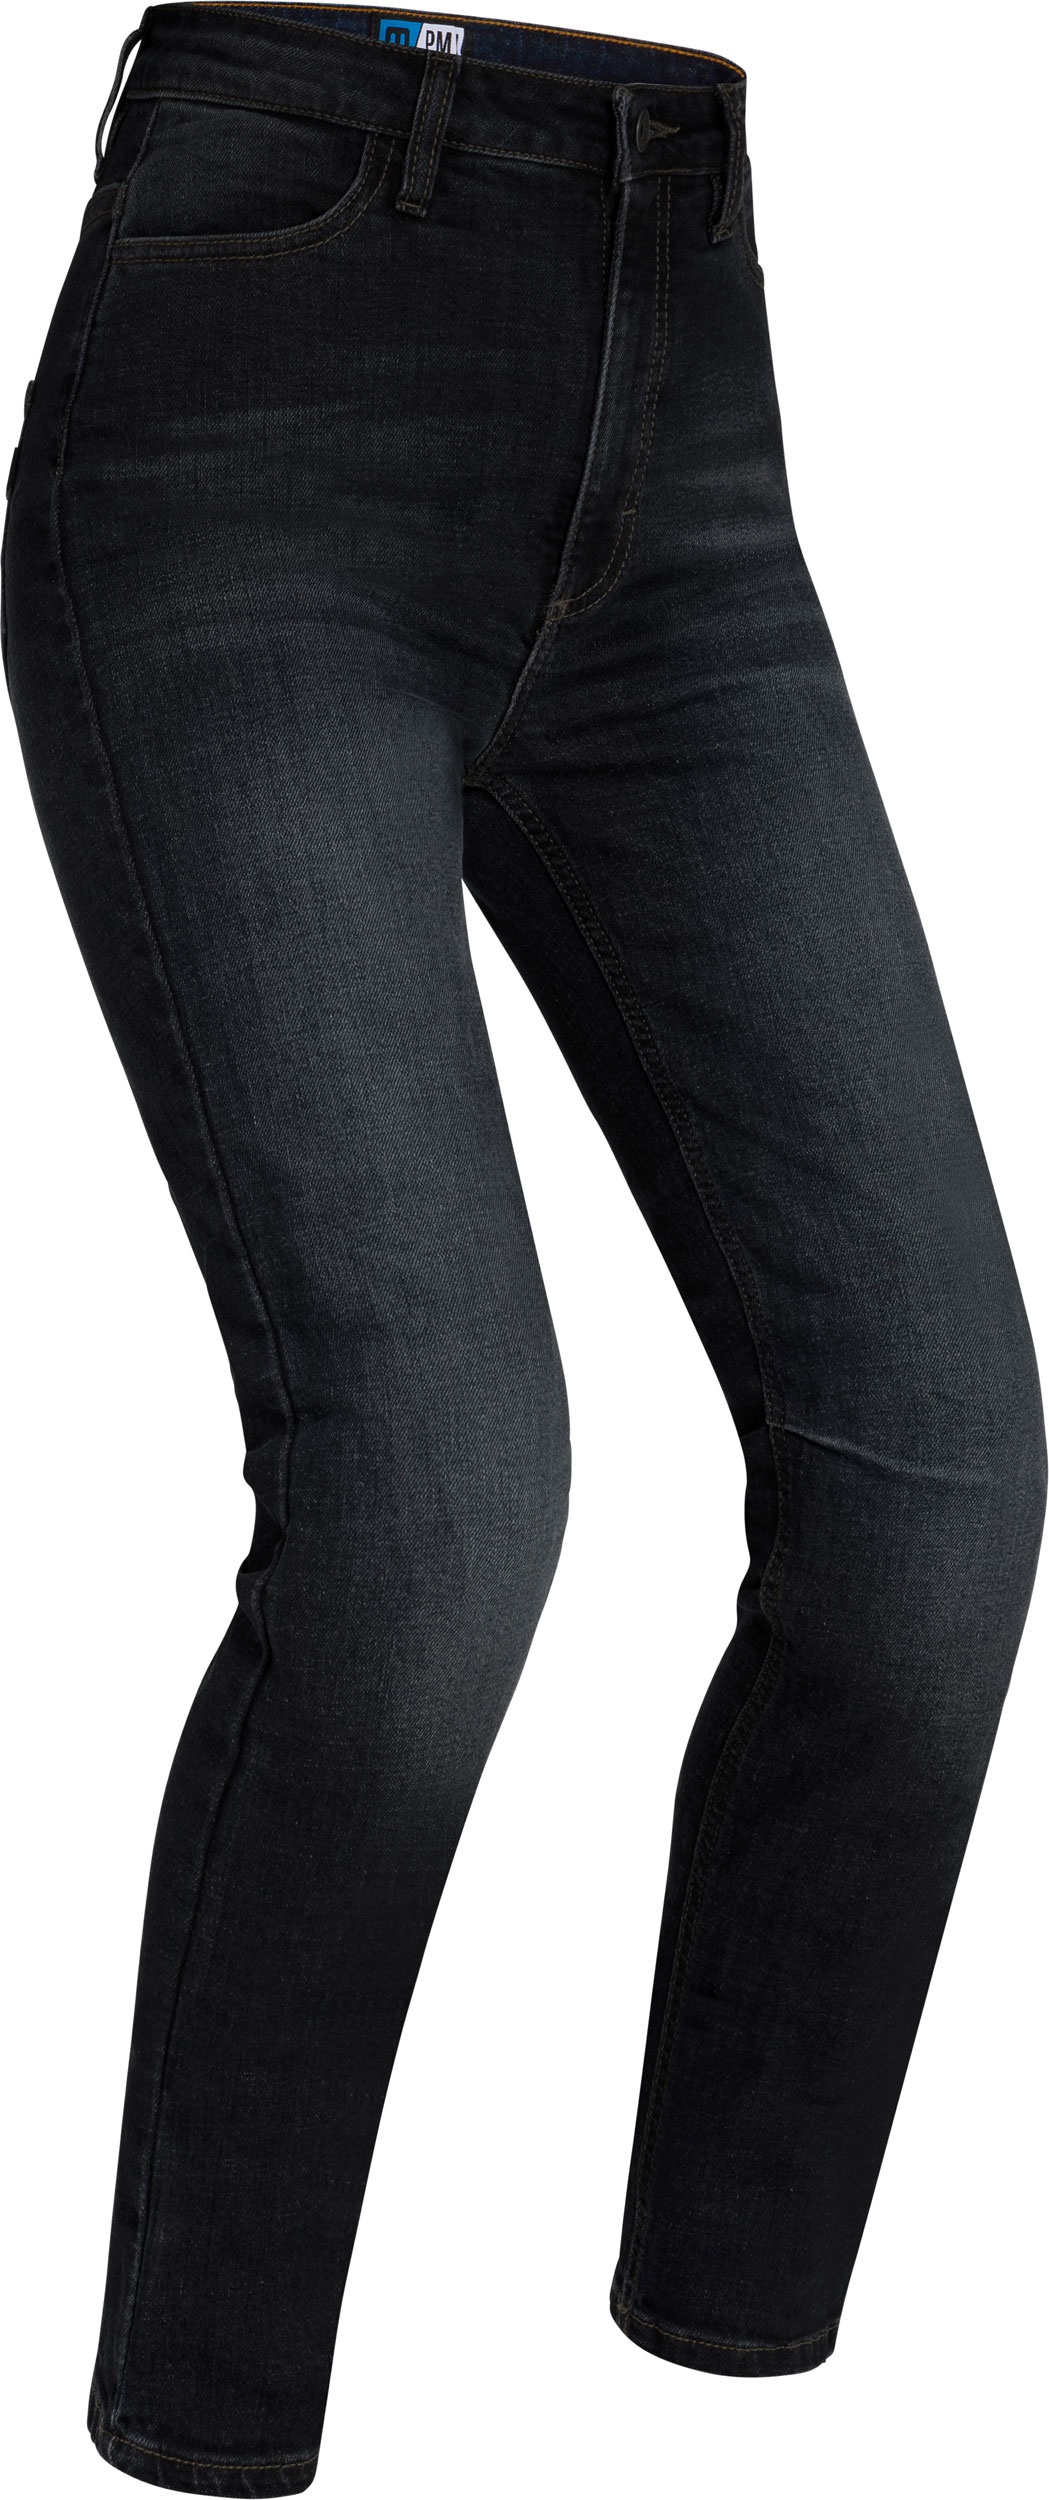 PMJ Sara, jeans femmes - Noir - 27